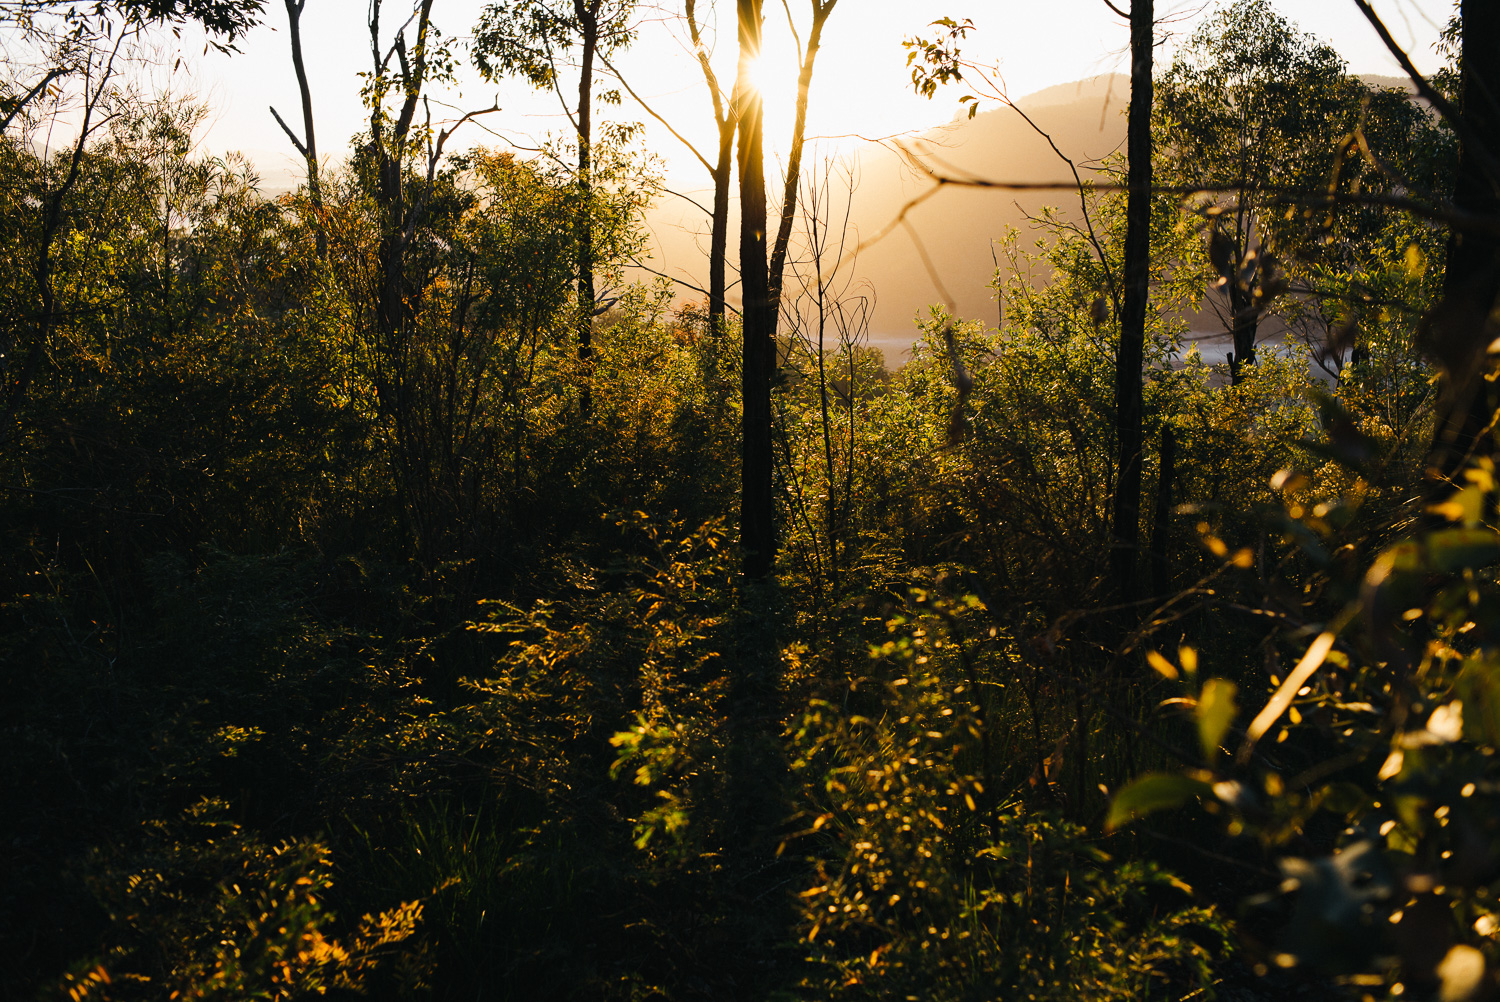 Nick-Bedford-Photographer-20160829_MtGreville_061915-Bushwalking, First Light, Hiking, Leica M Typ 240, Mount Greville, Mountains, Queensland, Summarit 35mm, Sunrise, VSCO Film.jpg